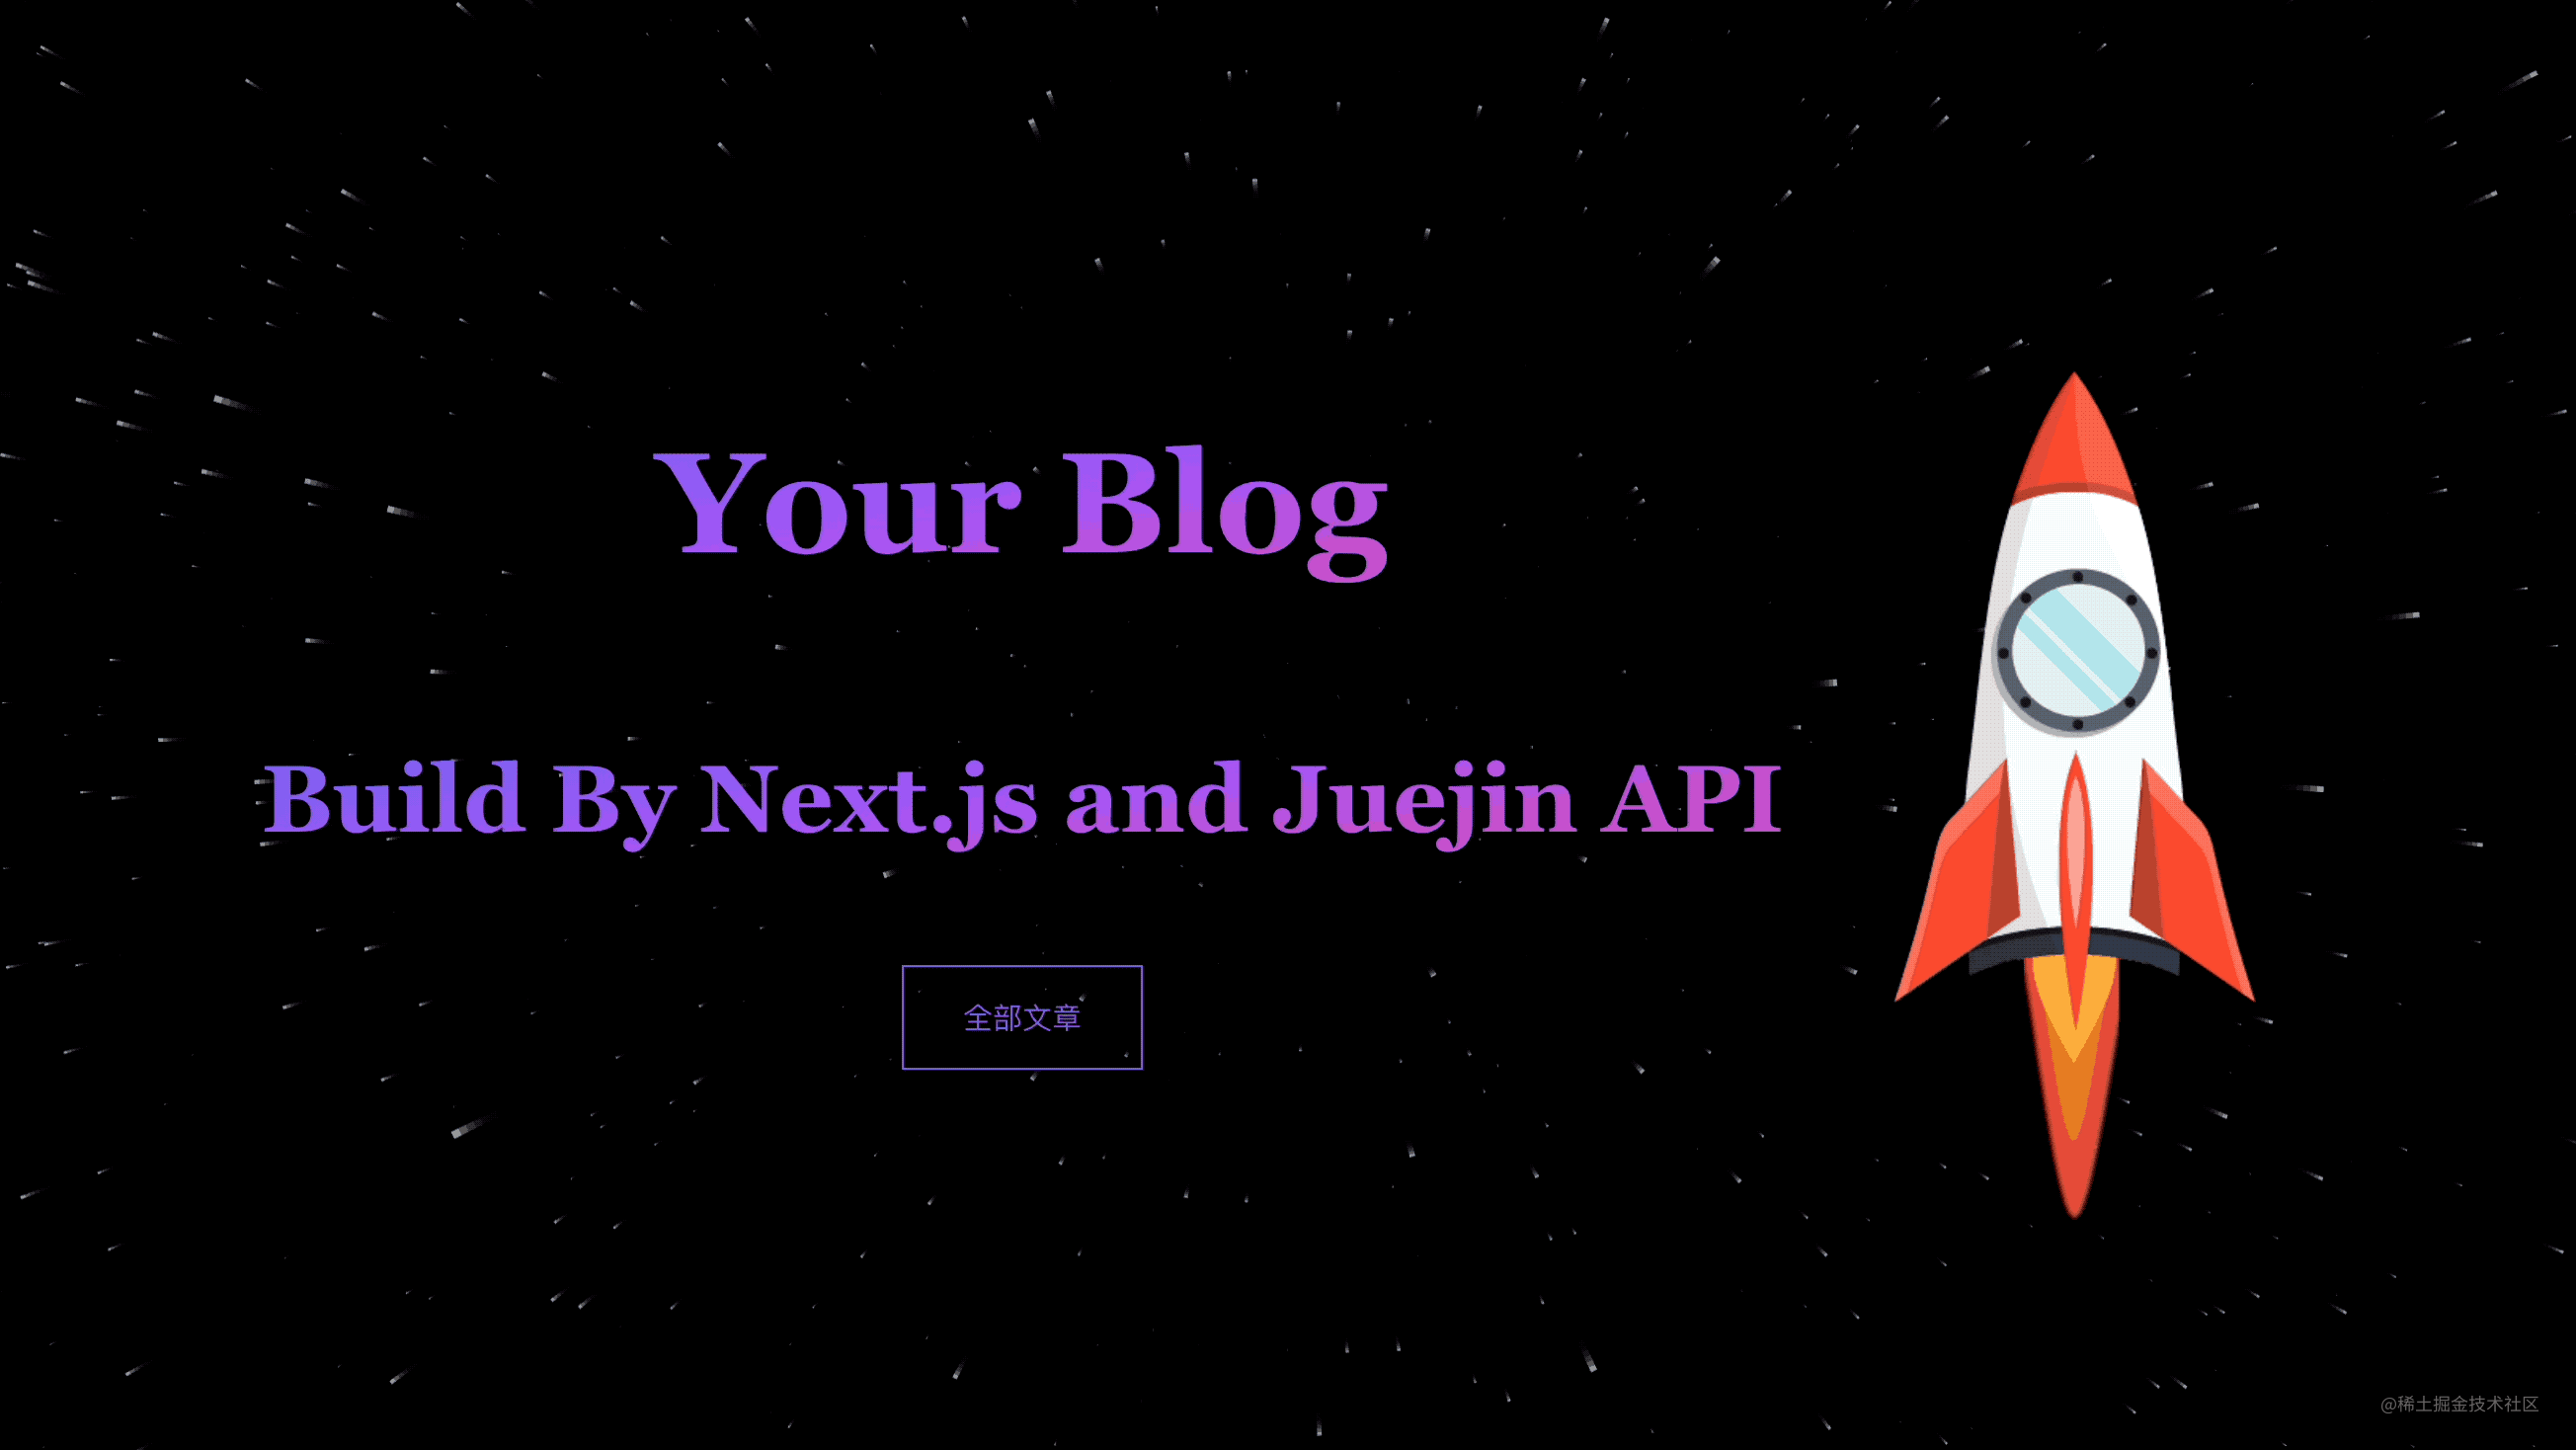 使用 Next.js 和掘金 API 打造个性博客